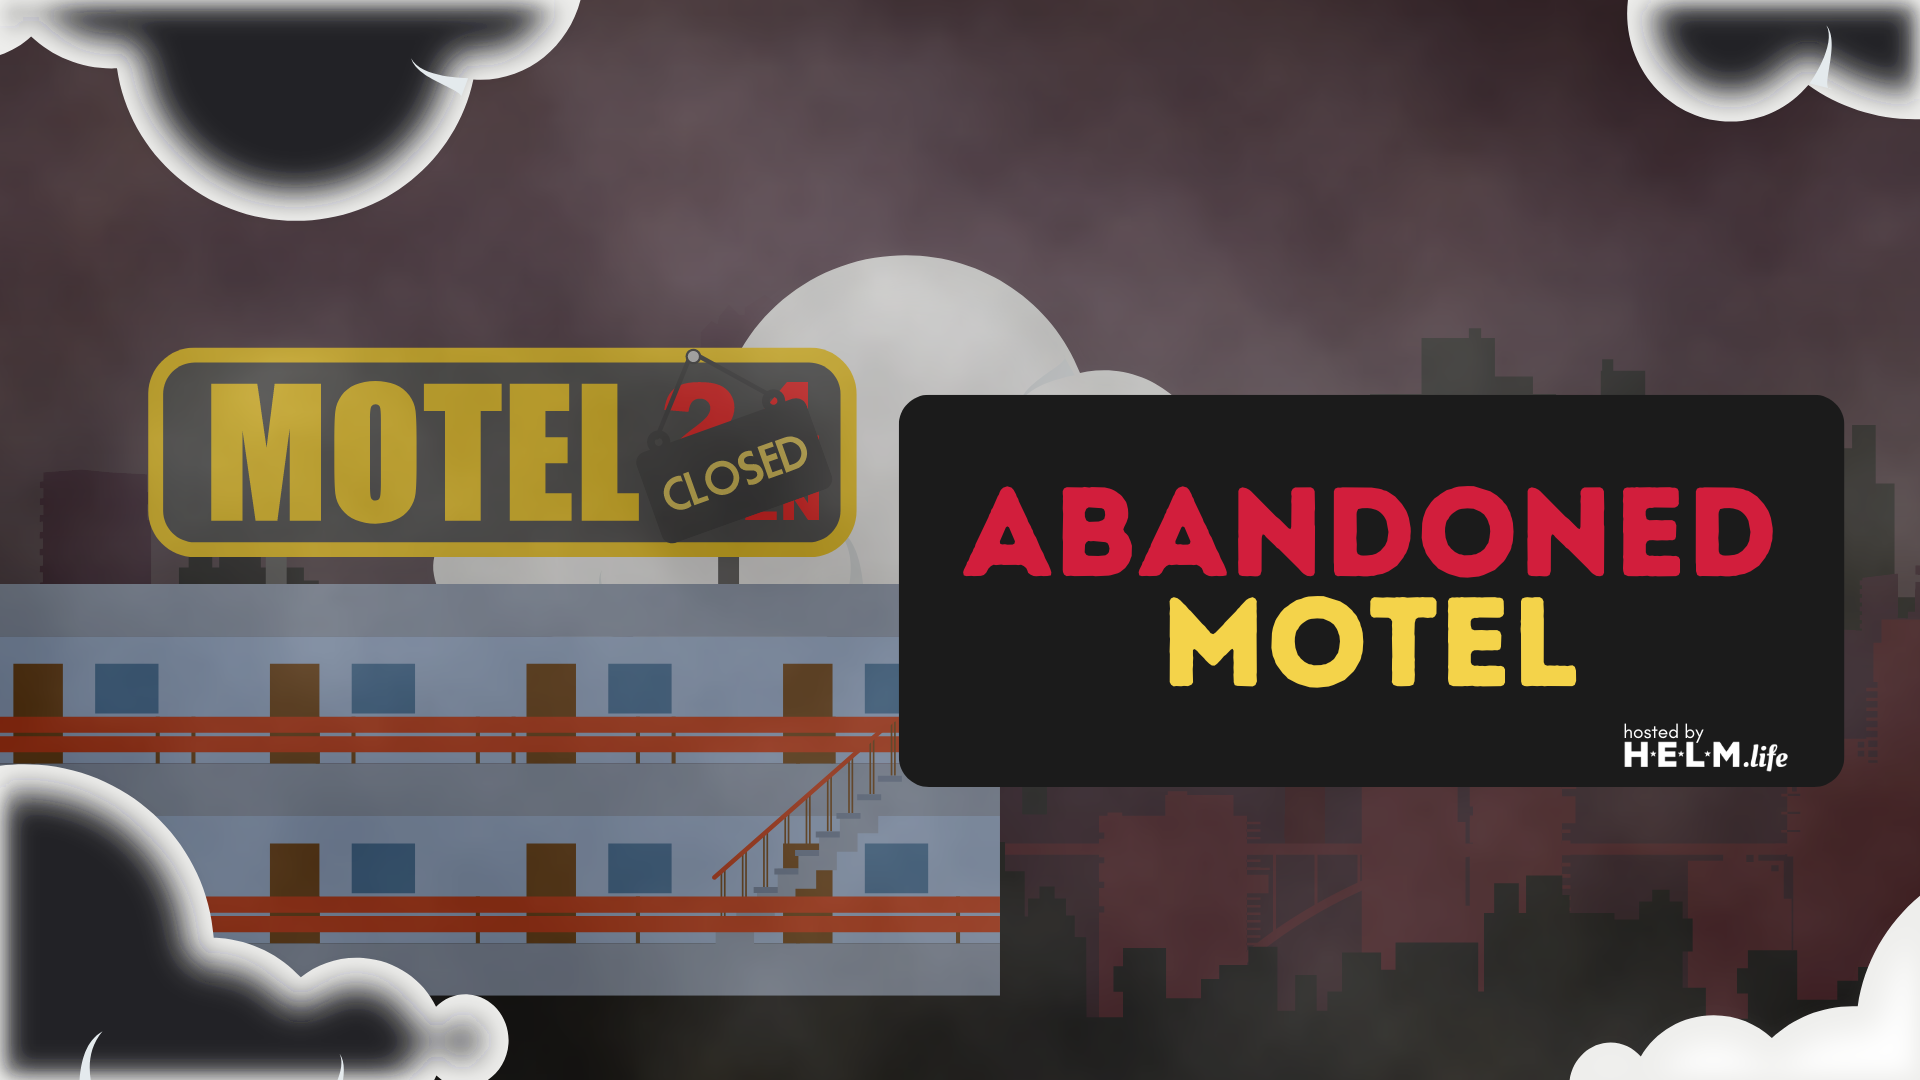 AbandonedMotel